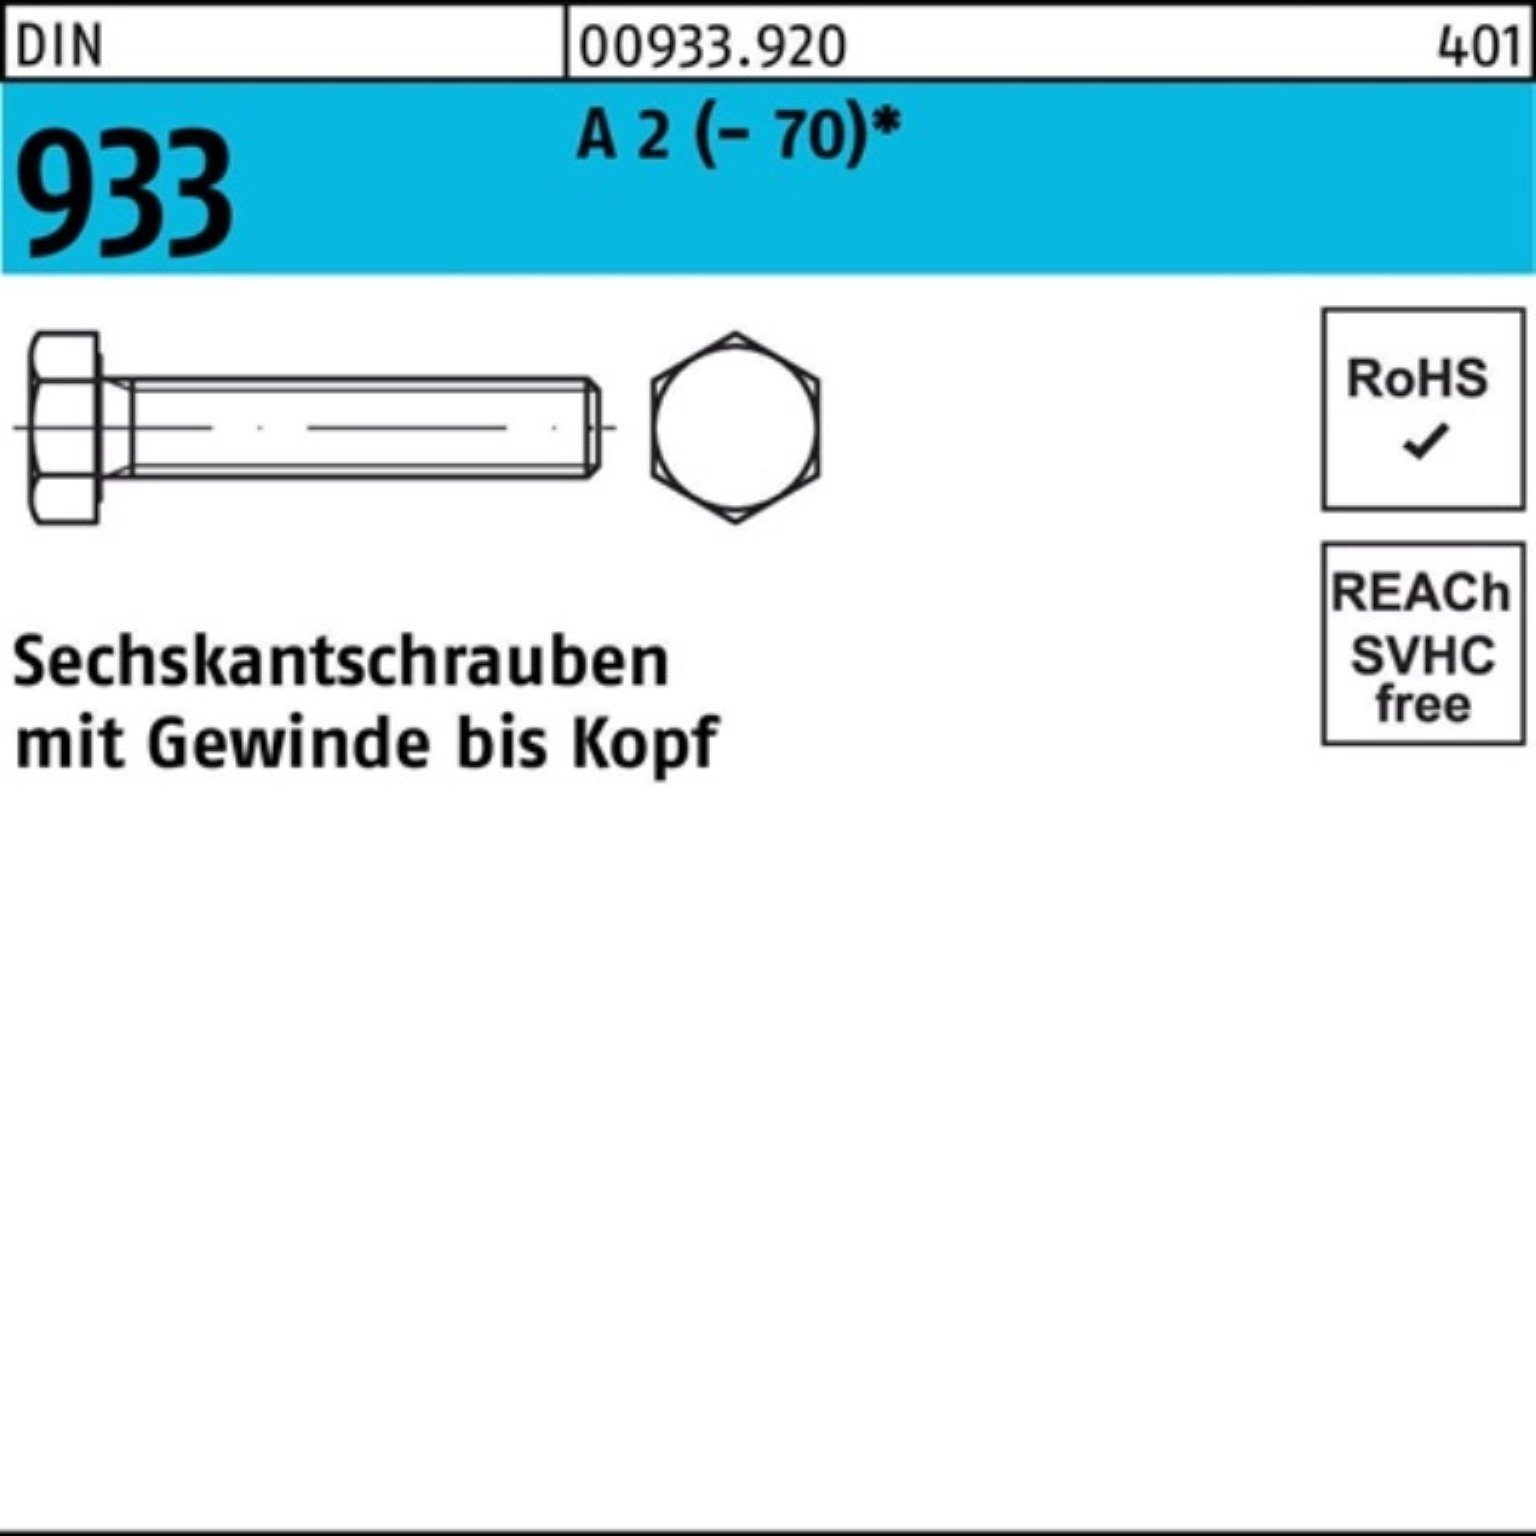 Reyher Sechskantschraube 1 2 D DIN Stück 933 M18x A Sechskantschraube (70) Pack 100er VG 150